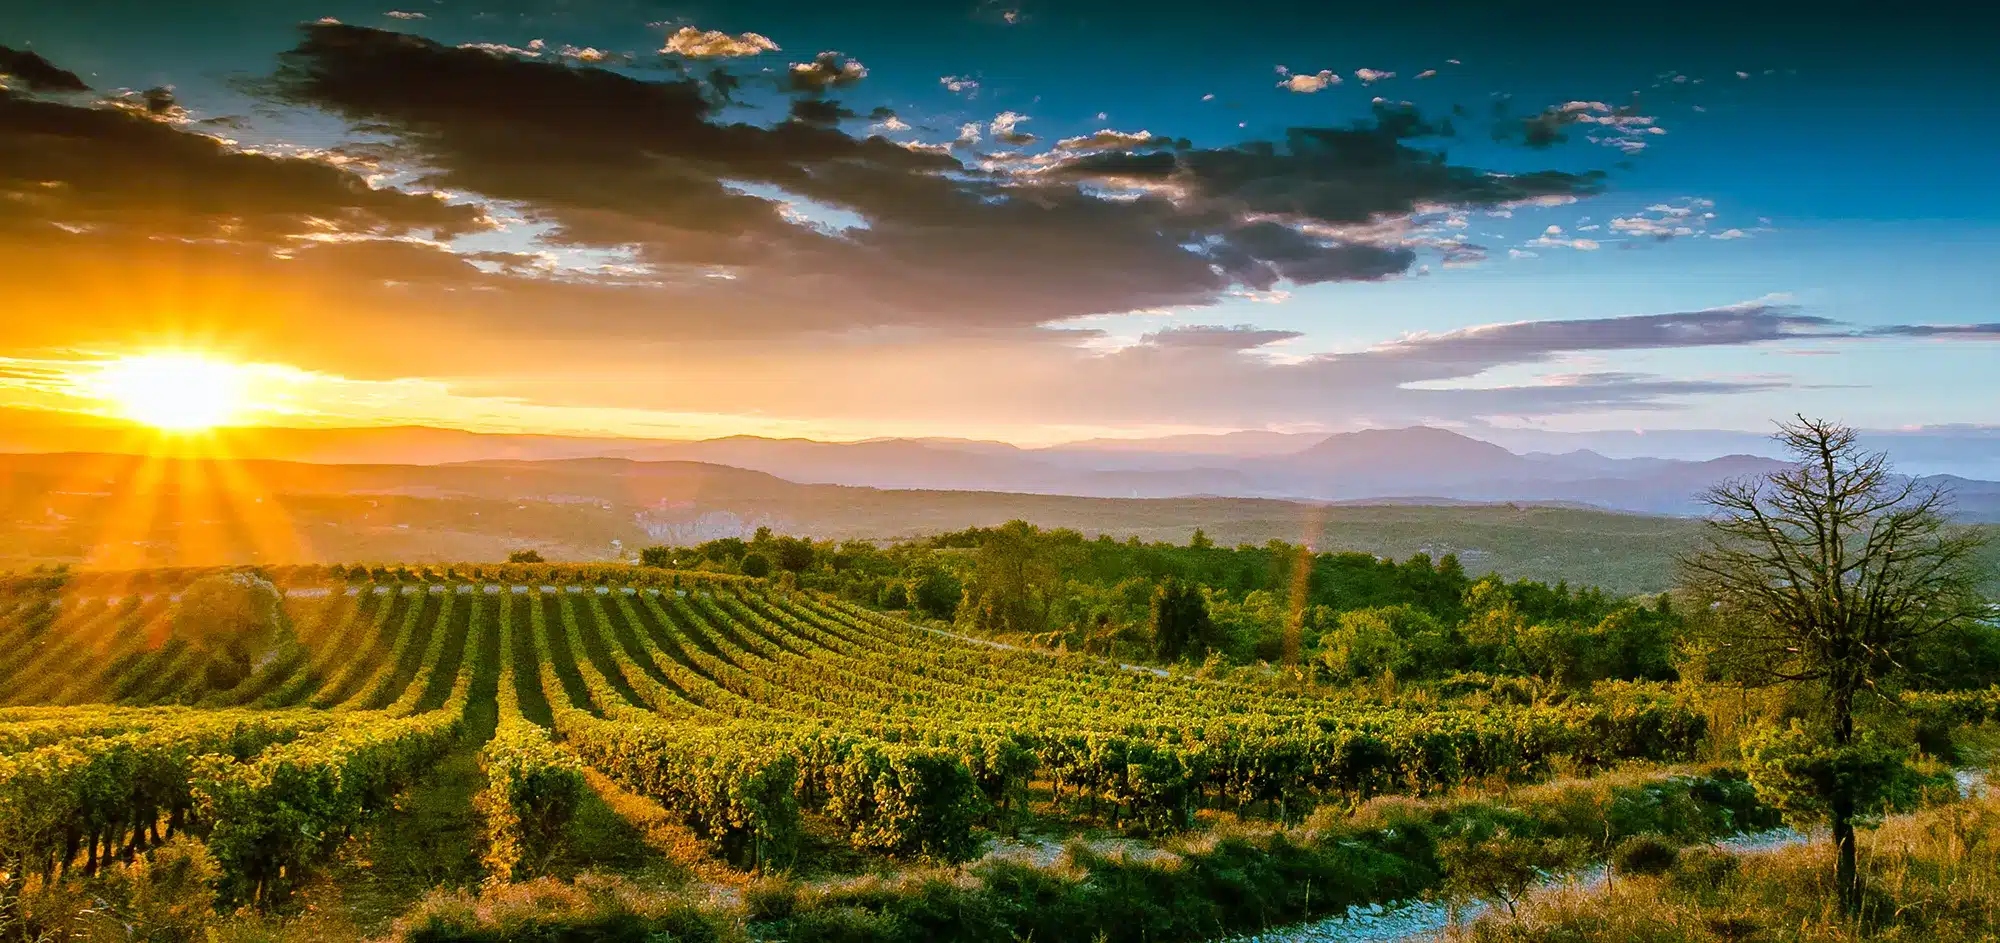 64 De wijnstok geeft vorm aan de landschappen van de Zuidelijke Ardèche door de seizoenen heen © Benoit Giorgetti